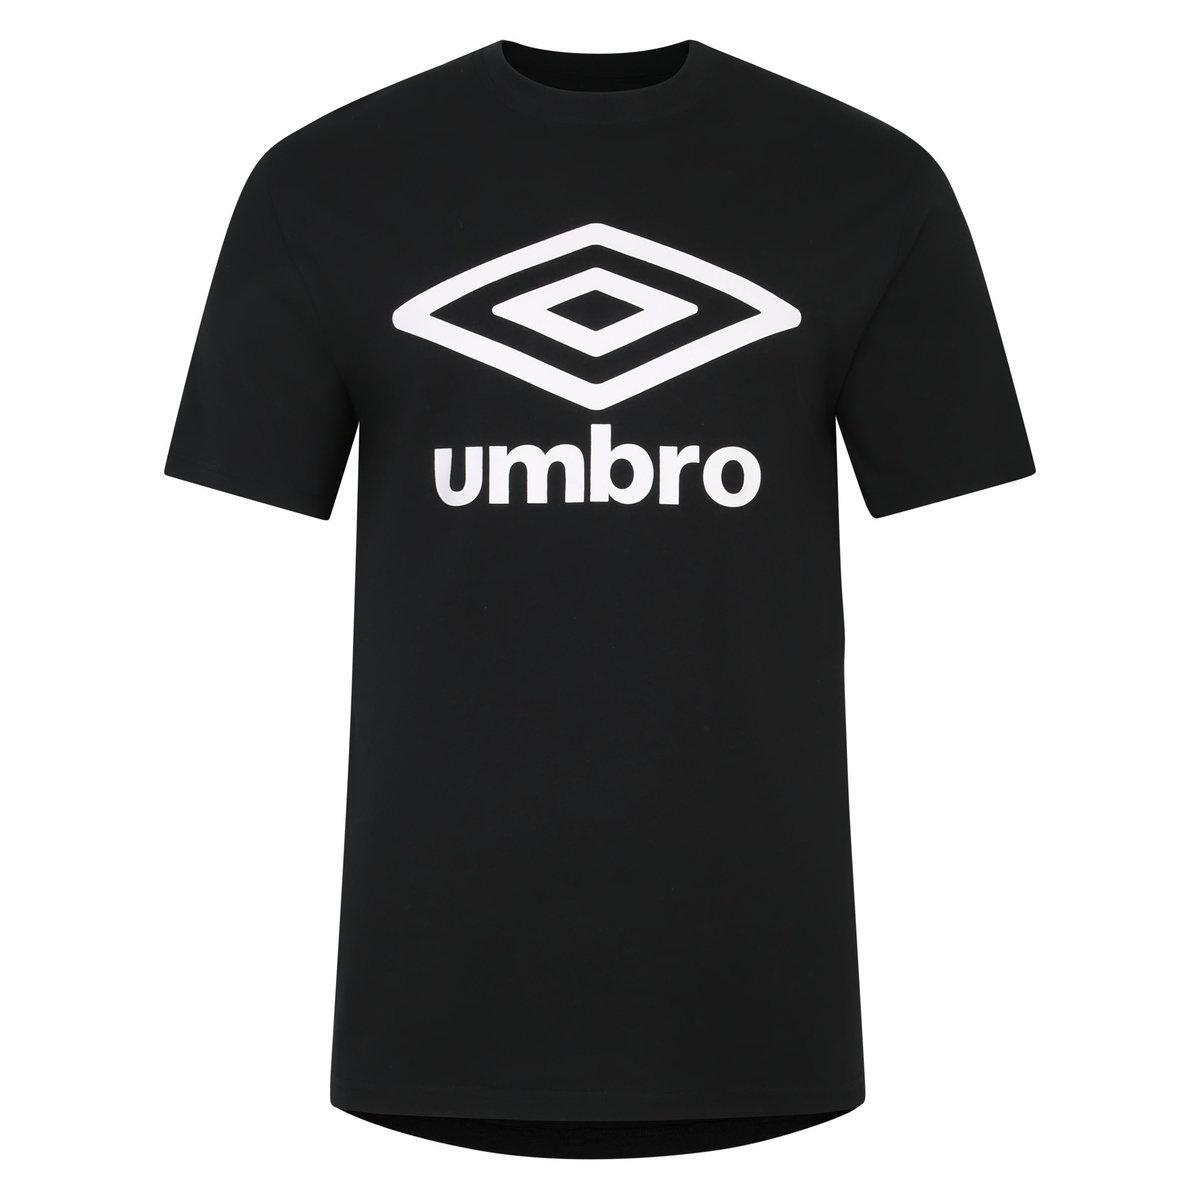 UMBRO Mens Team TShirt (Black/White)